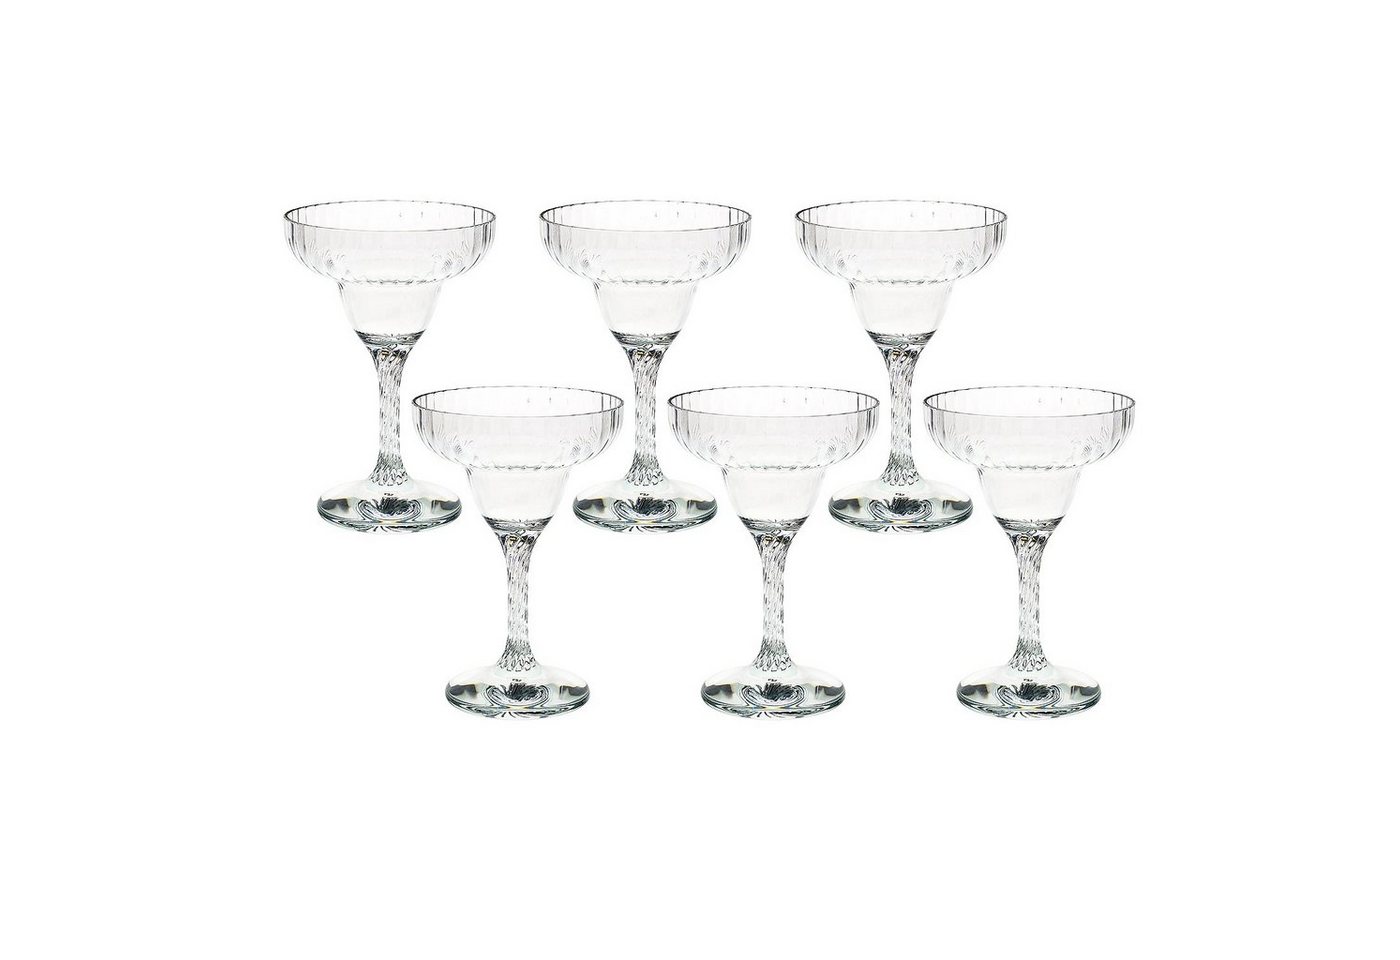 Morleos Cocktailglas ebay Test Variationeserweiterungen von Morleos